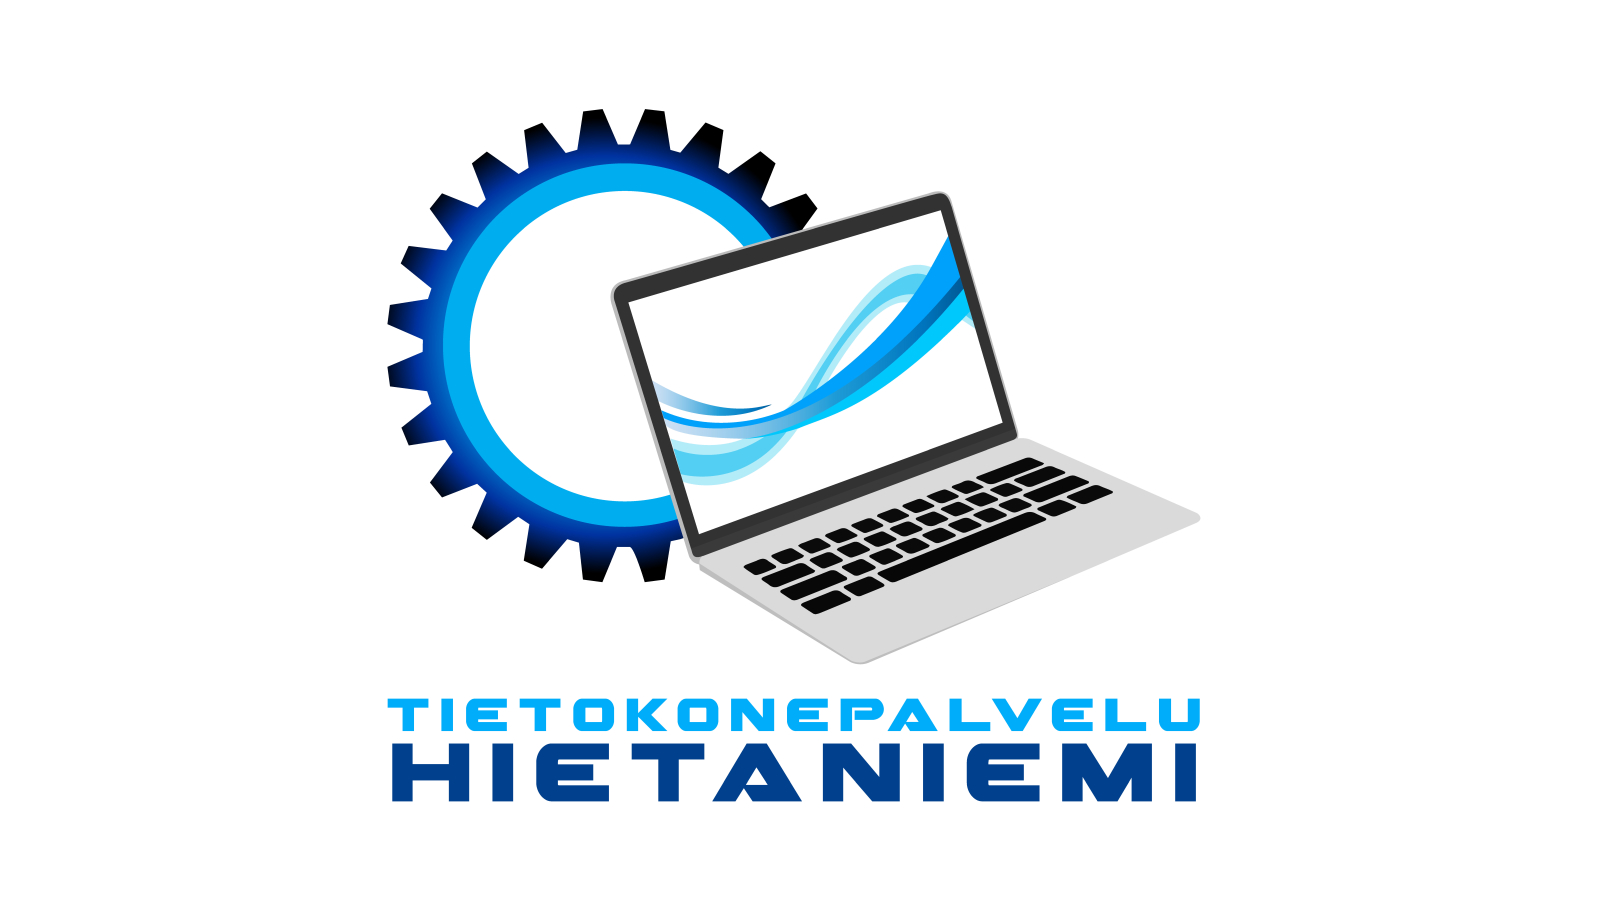 www.tietokonepalveluhietaniemi.fi